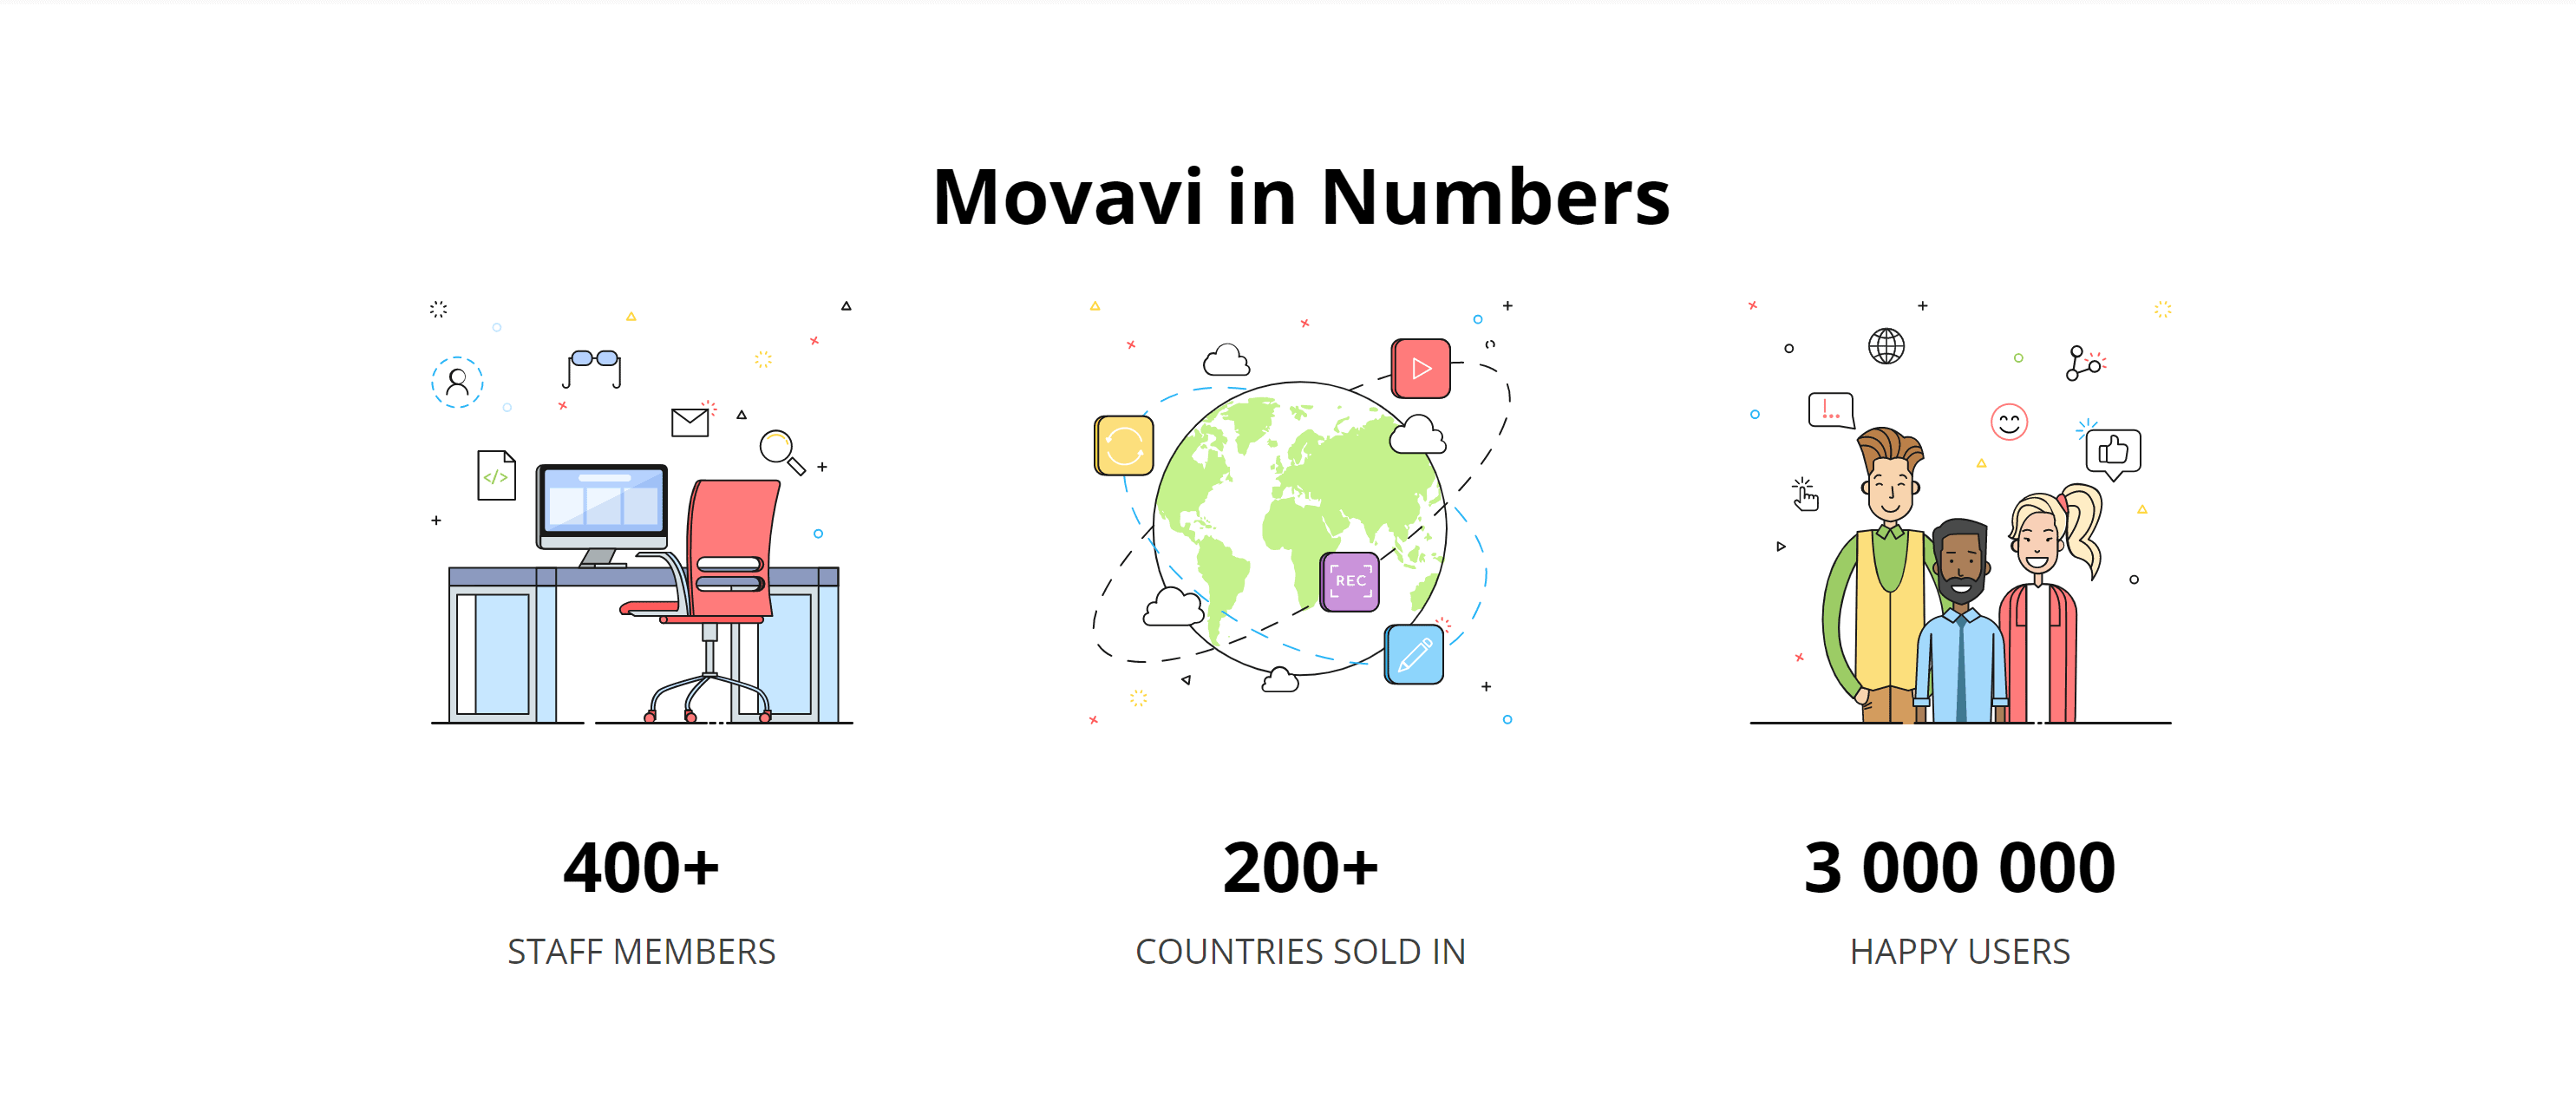 Статистика видеоредакторов movavi- обзор видеоредактора movavi